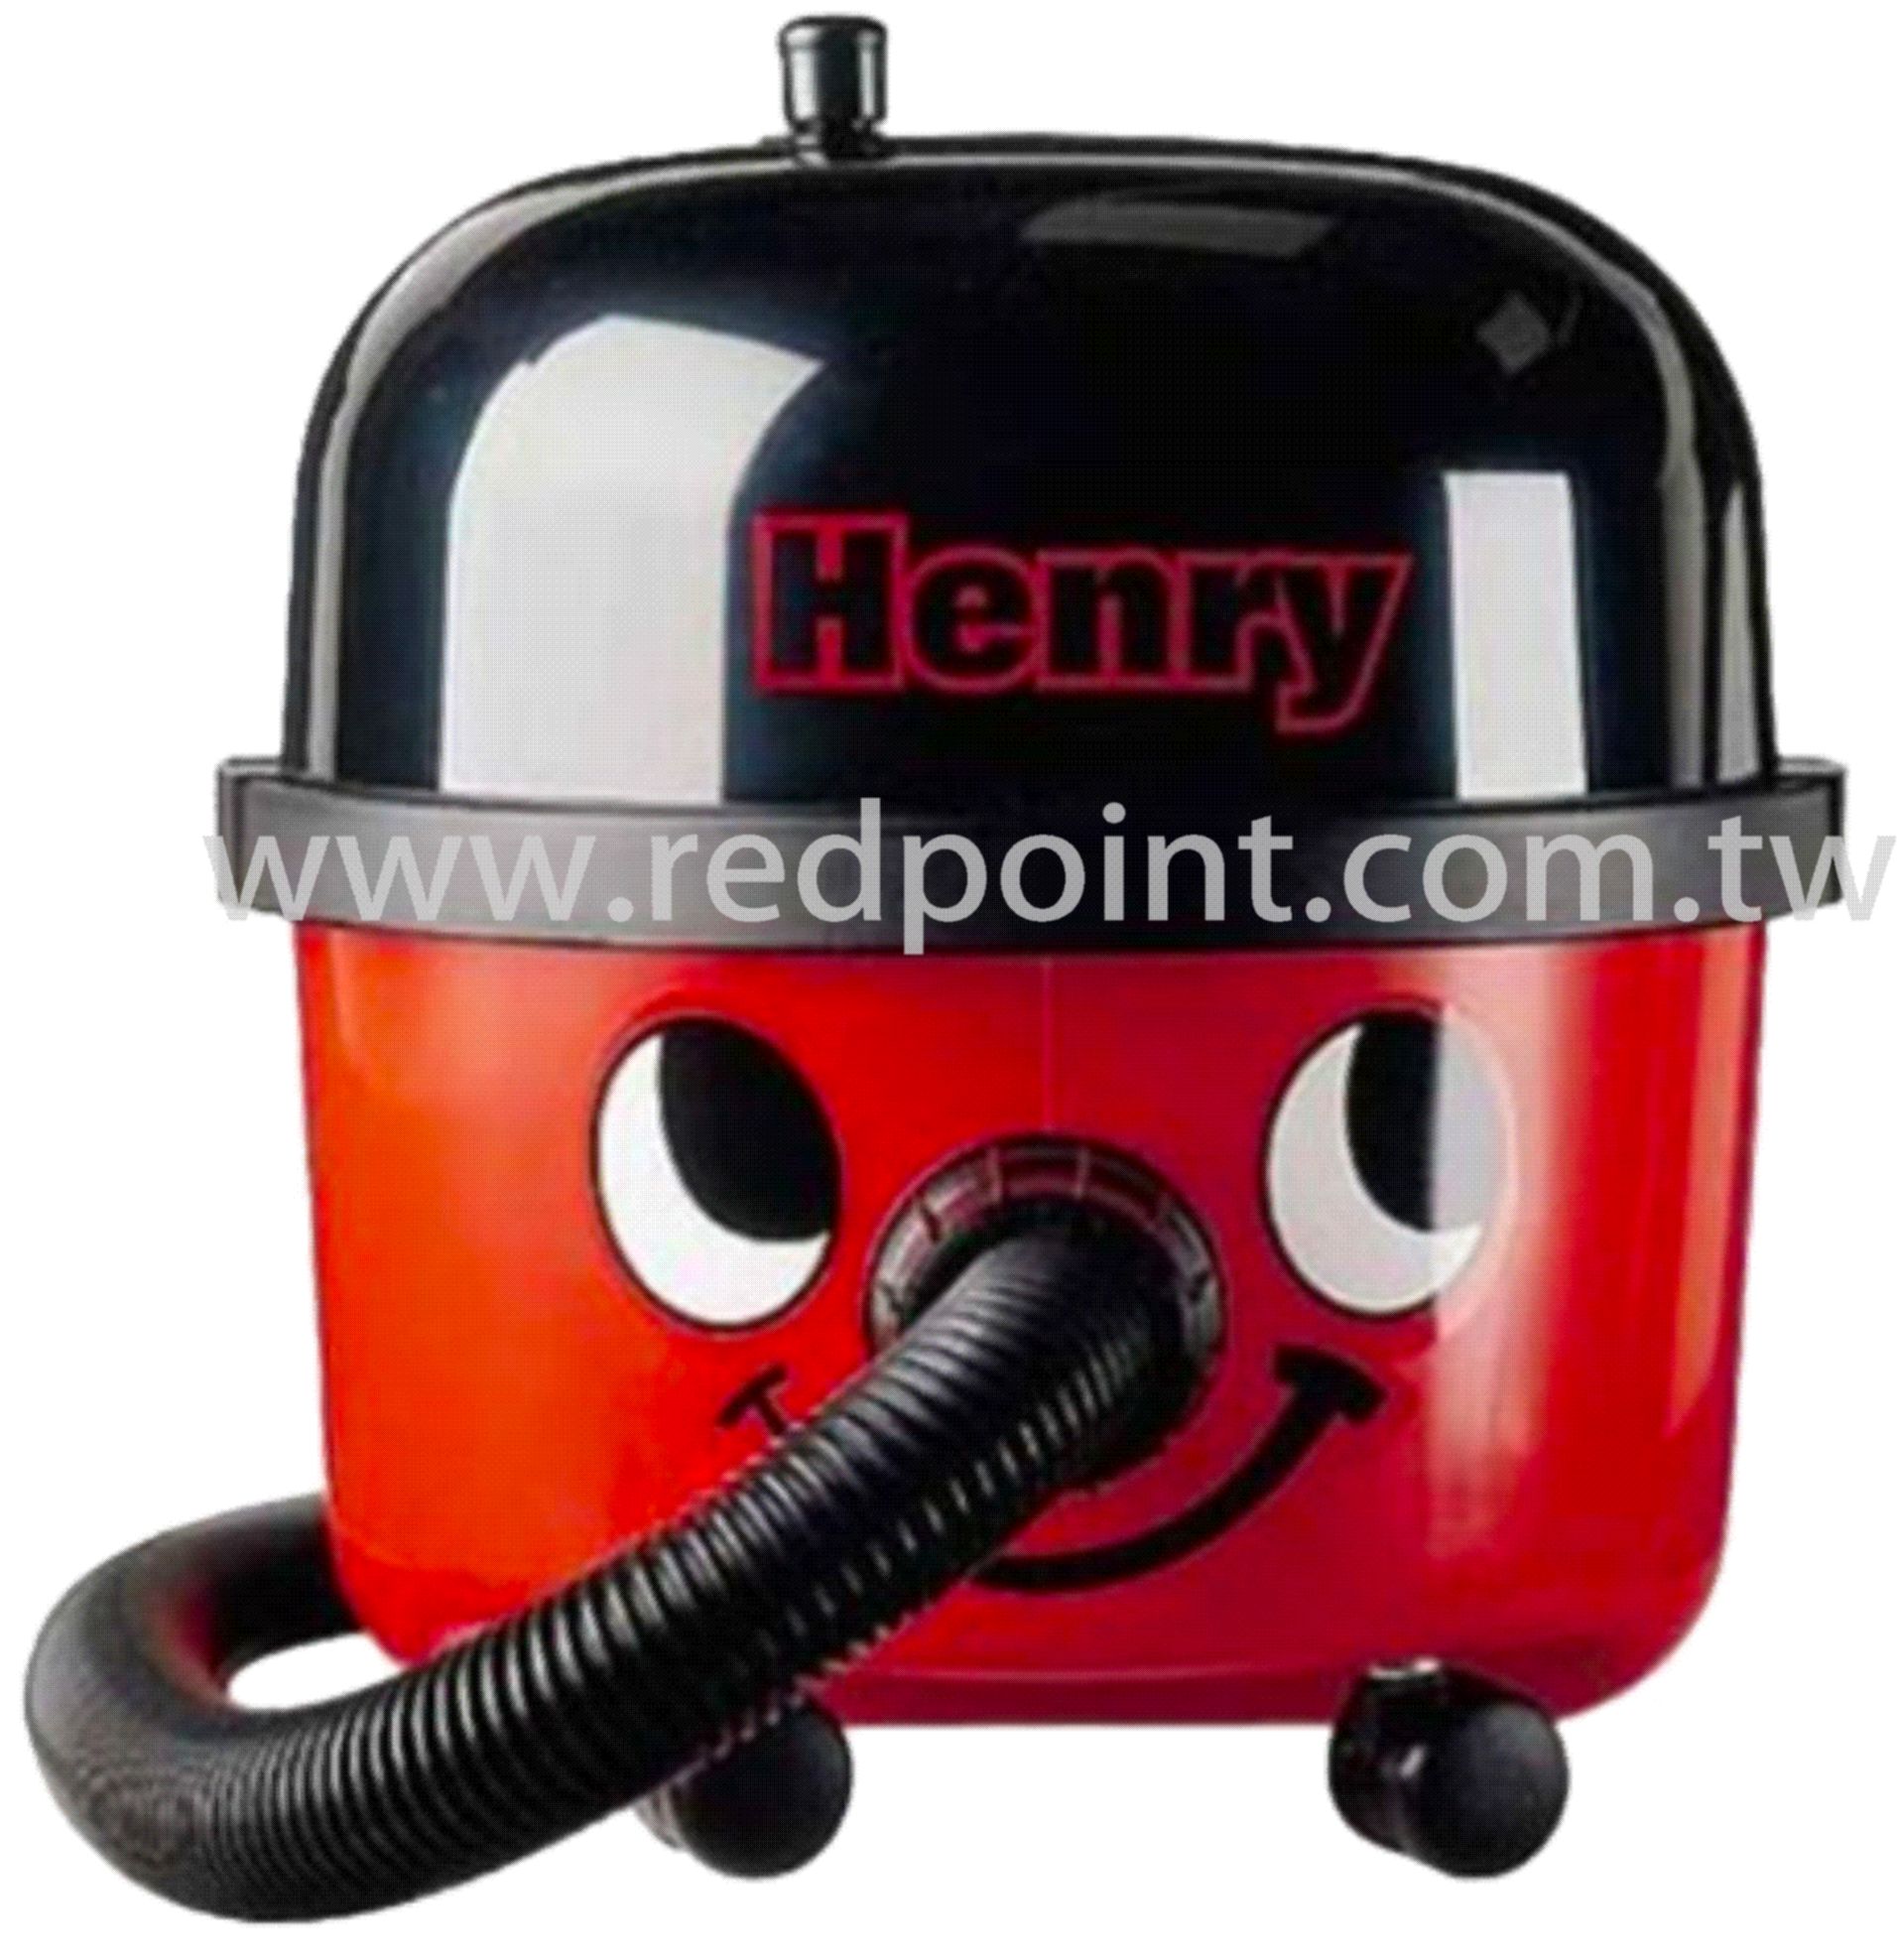 小亨利,乾式,吸塵器,乾式吸塵器,紅點,清潔用品